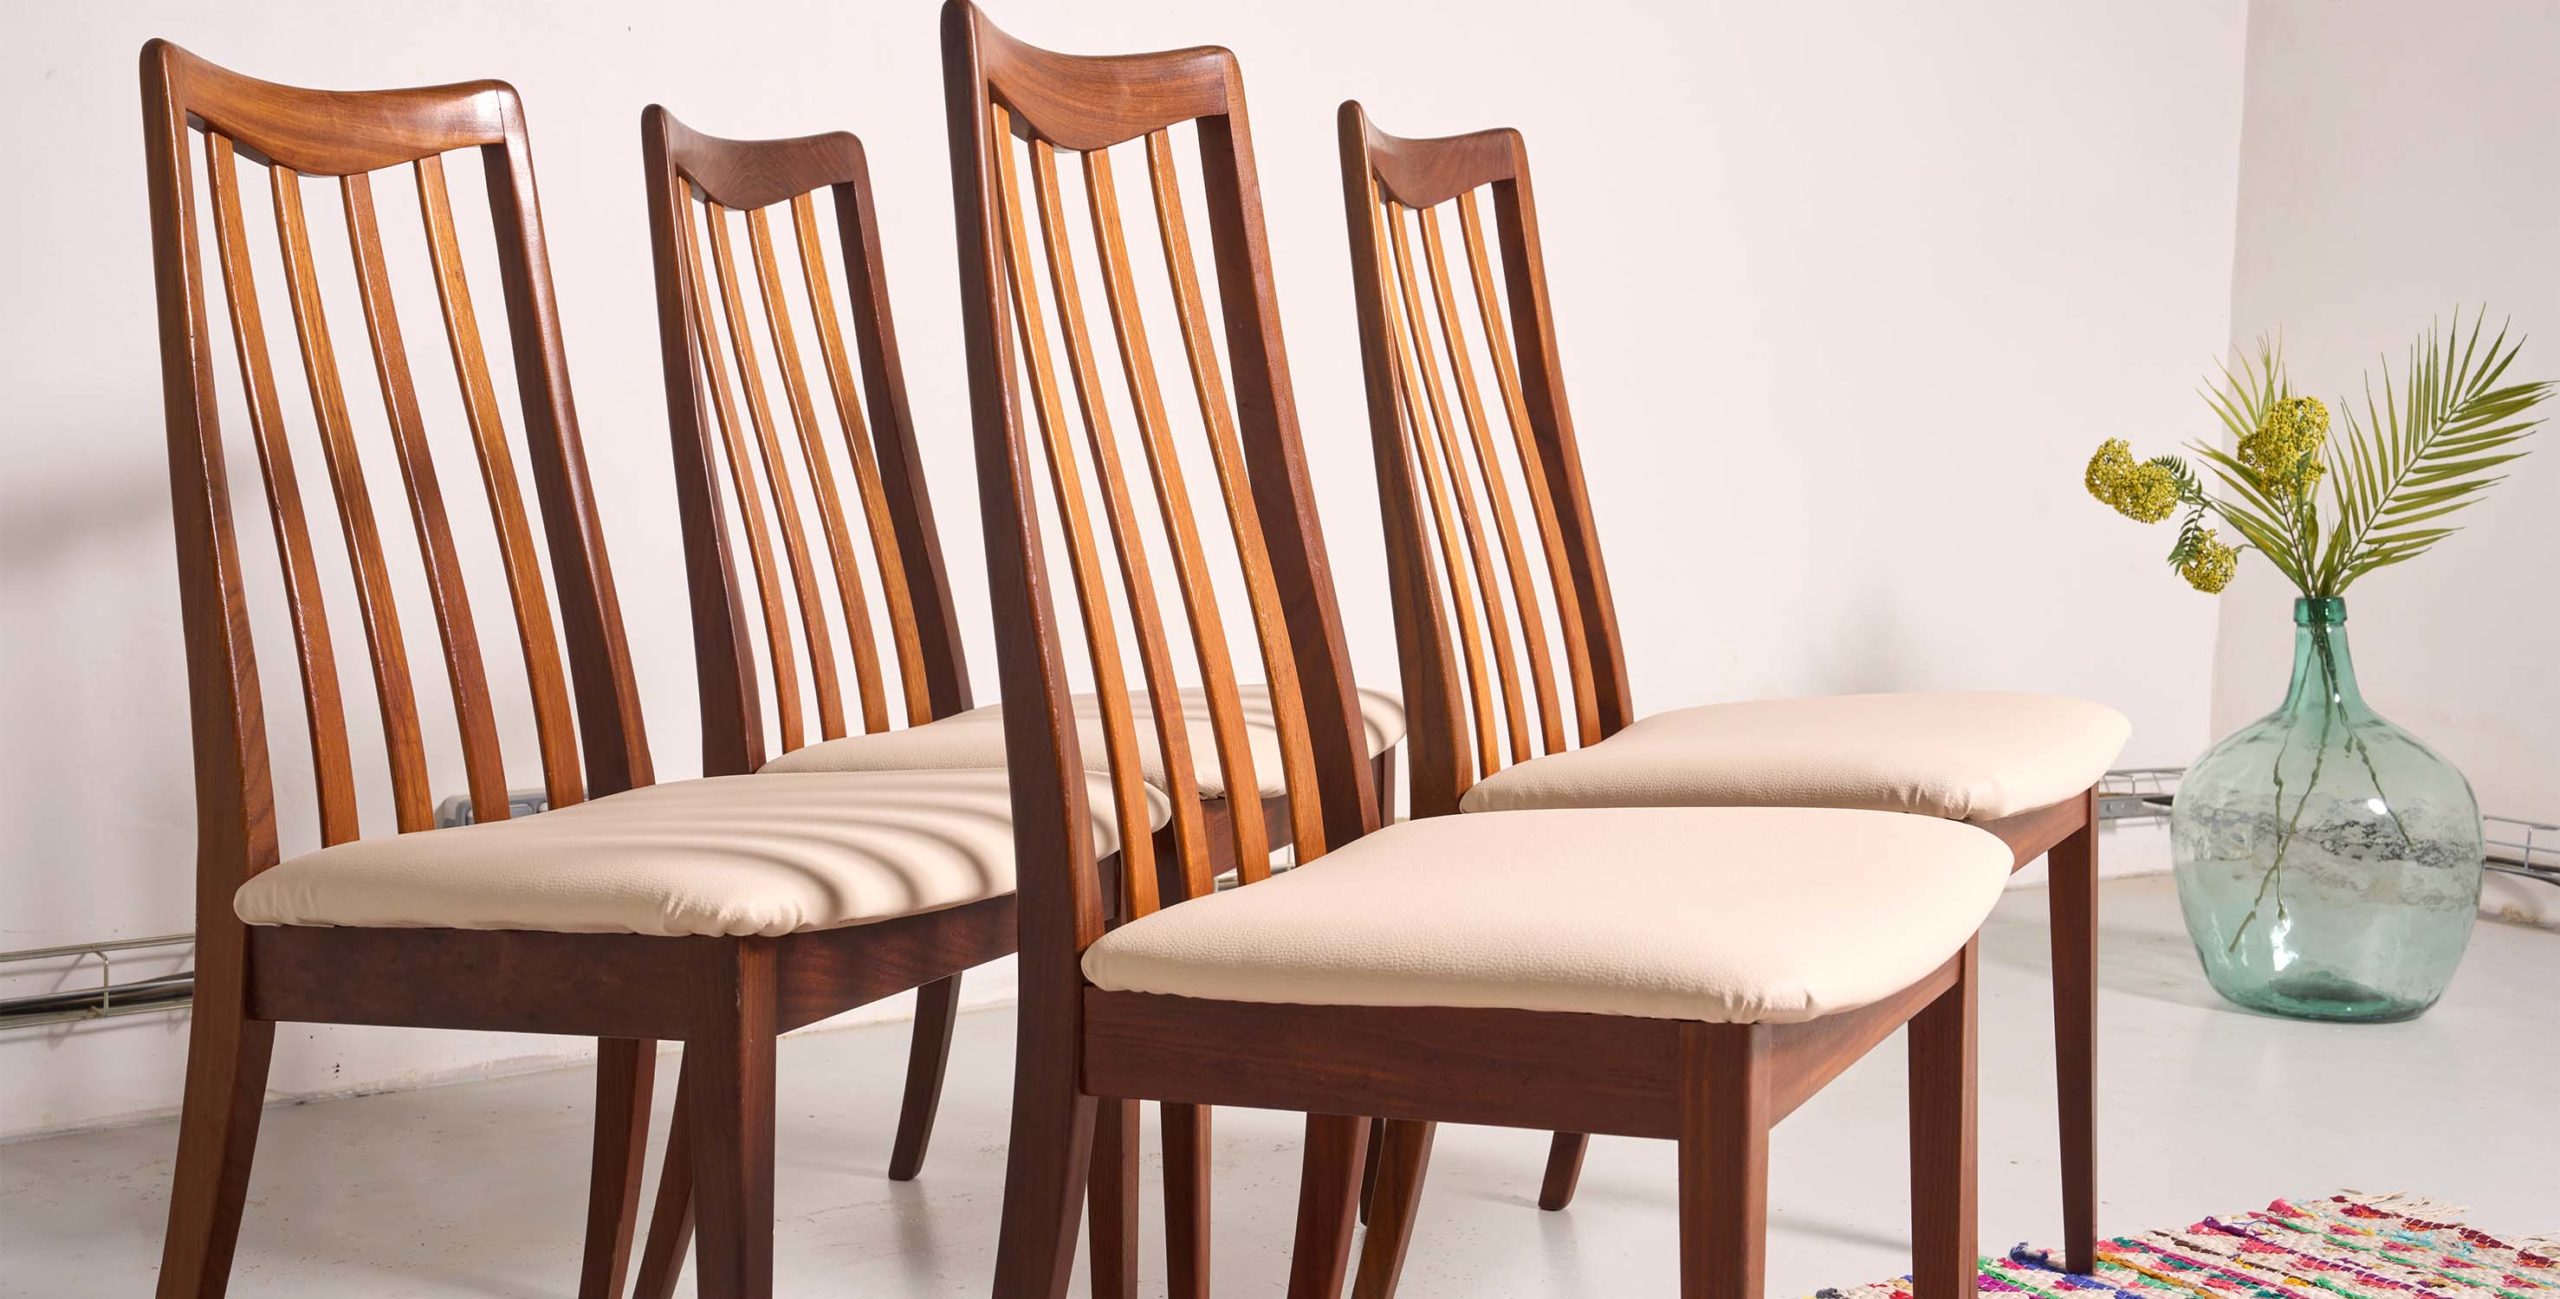 4 chaises vintage, 4 chaises G Plan, chaises G Plan, chaise G Plan, chaises à barreaux, chaise G Plan, 4 chaises à barreaux, G Plan, Chaises beiges, chaises skaï beige, chaises tack, chaises teck vintage